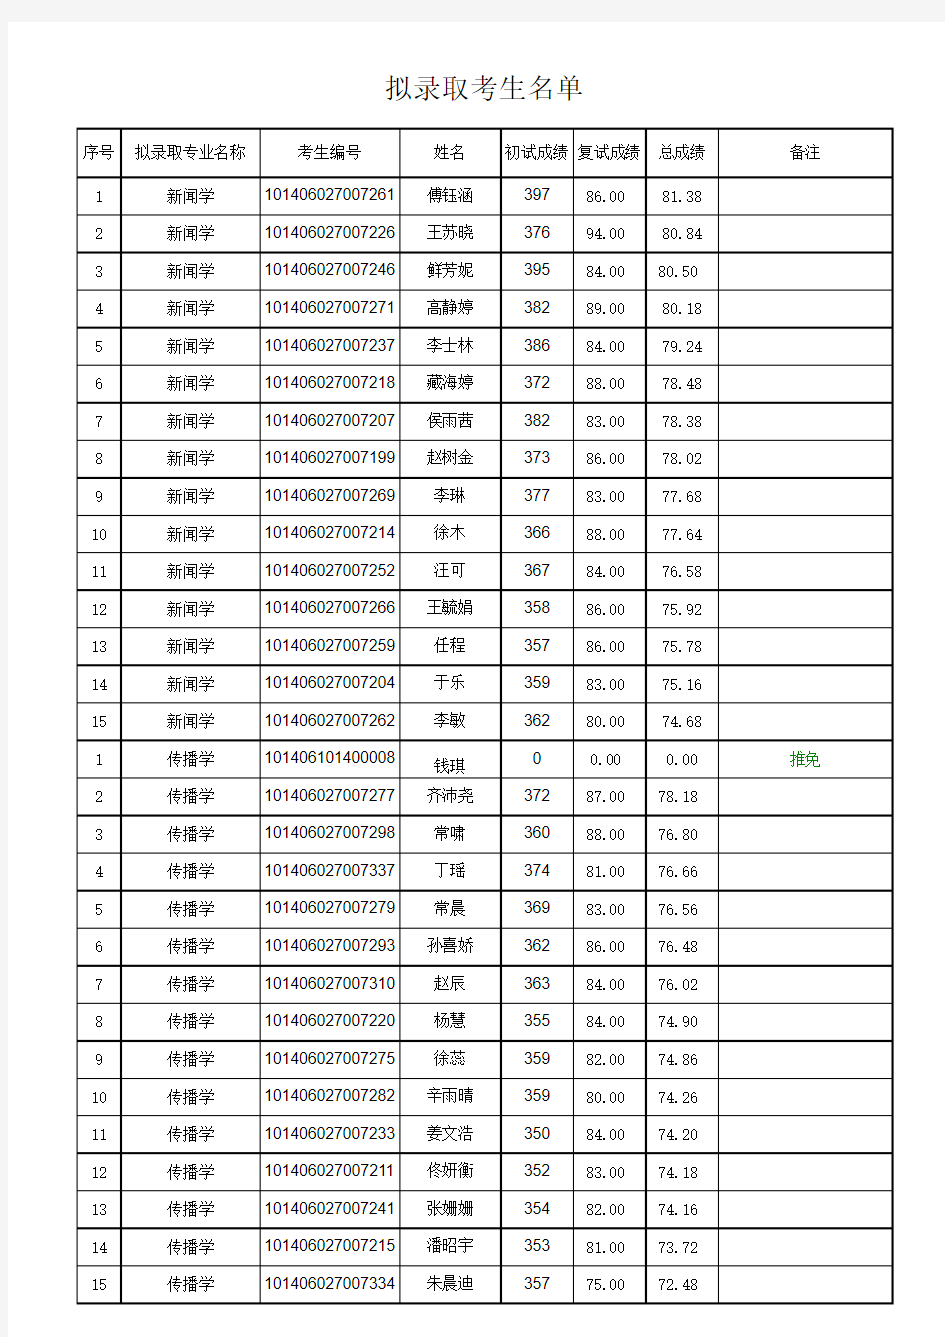 辽宁大学新闻与传播学院2016年研究生拟录取名单